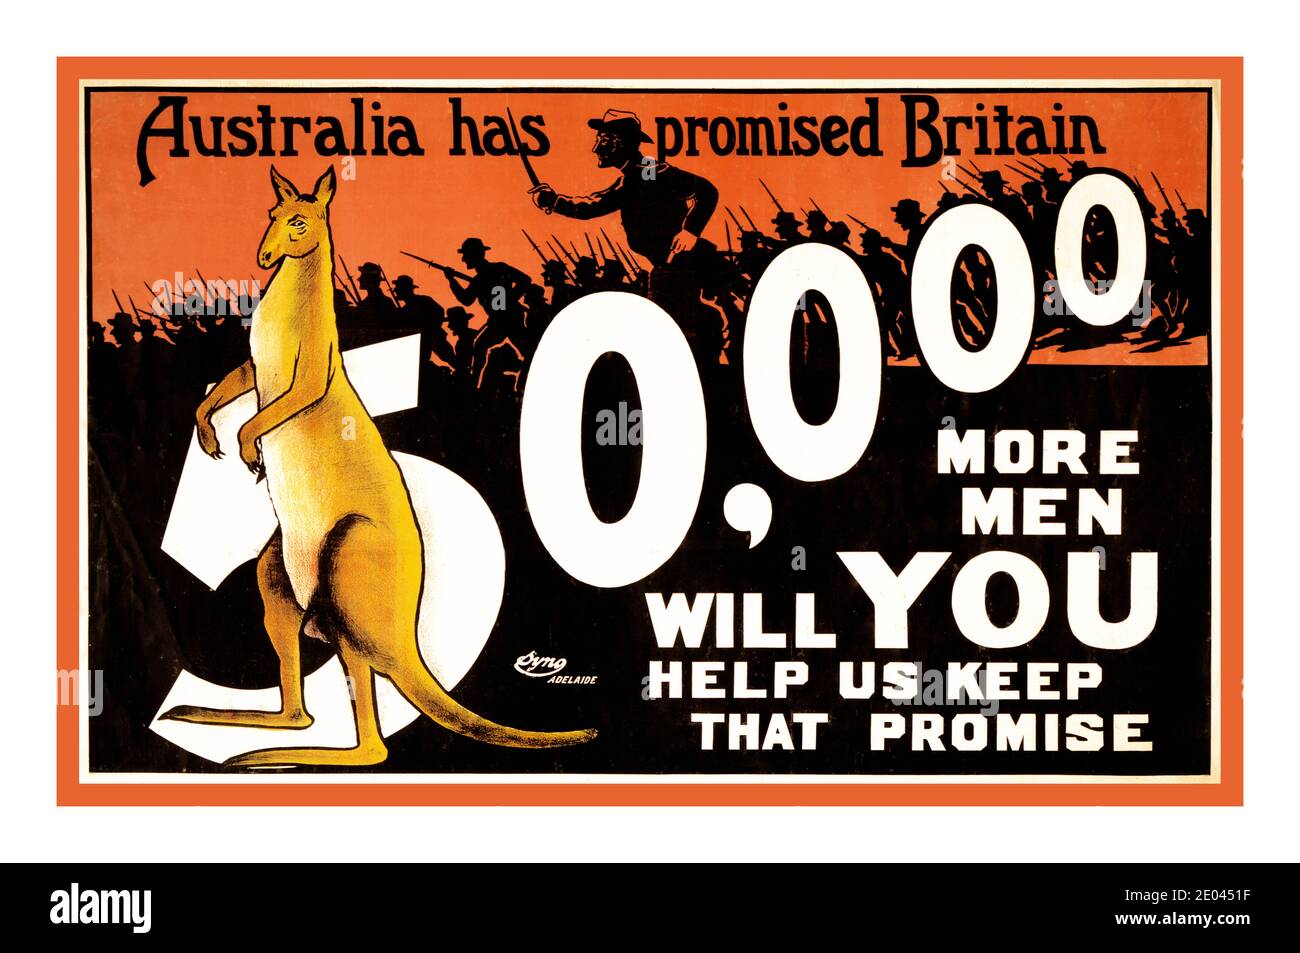 Archive affiche de recrutement de la WW1 Australie 1914 « l’Australie a promis à la Grande-Bretagne 50000 hommes de plus; allez-vous nous aider à tenir cette promesse » affiche un kangourou devant le numéro 50,000 et en arrière-plan silhouette des soldats au combat. Adélaïde 1915 Guerre mondiale, 1914-1918--recrutement et enrôlement--kangourous d'Australie--Australie--1910 à 1920 soldats australiens--1910 à 1920 lithographies--couleur--1910-1920. Affiches de guerre--australiennes--1910-1920. Banque D'Images